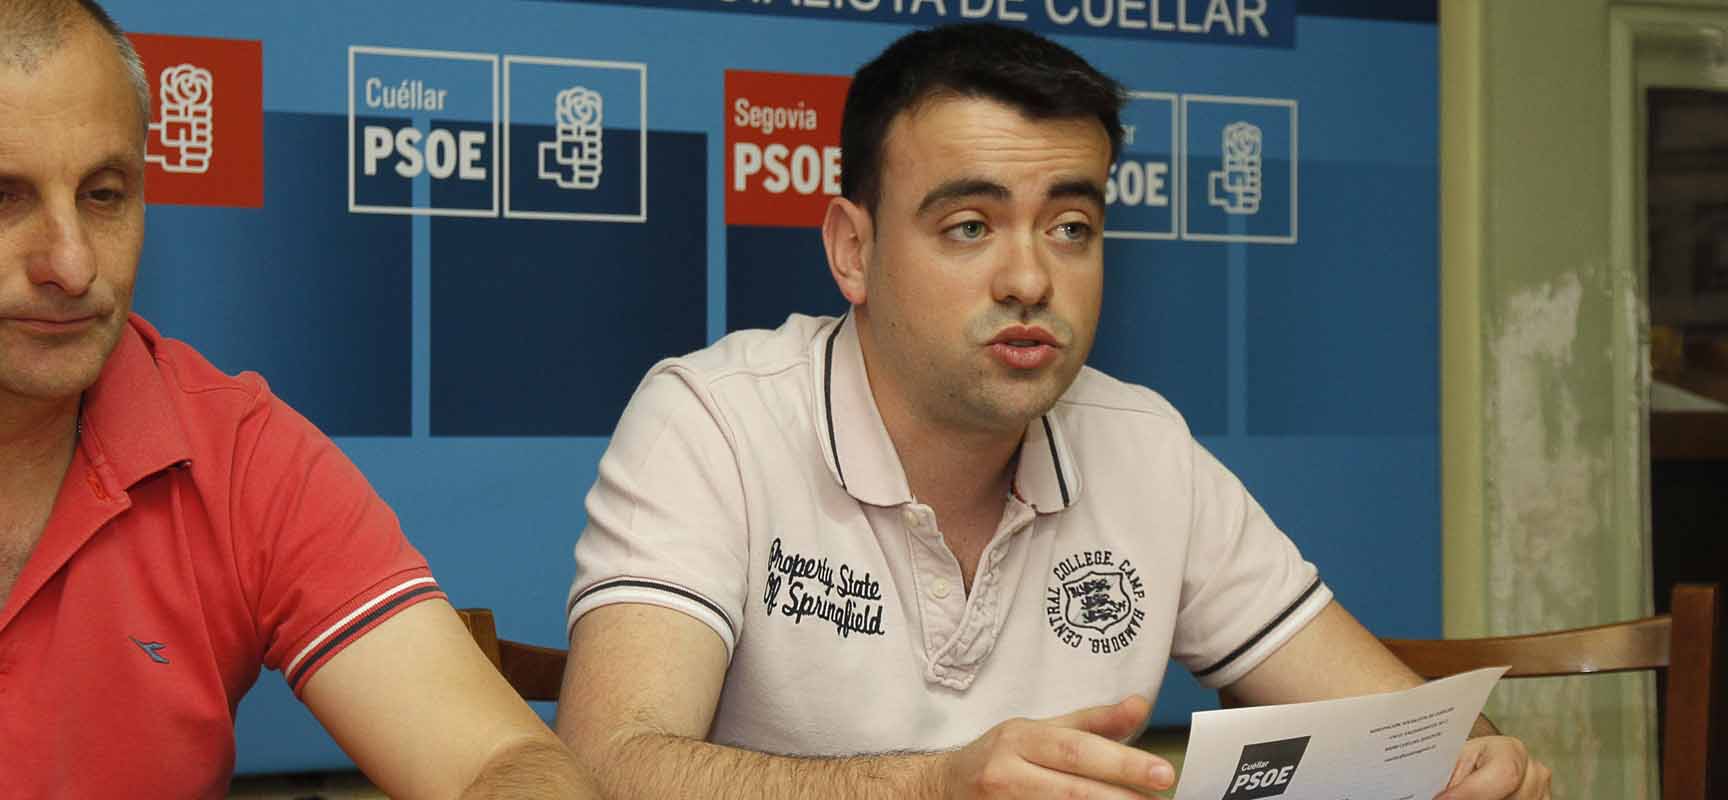 Carlos Fraile, coordinador de la ejecutiva local del PSOE de Cuéllar, durante una rueda de prensa en la sede del partido.